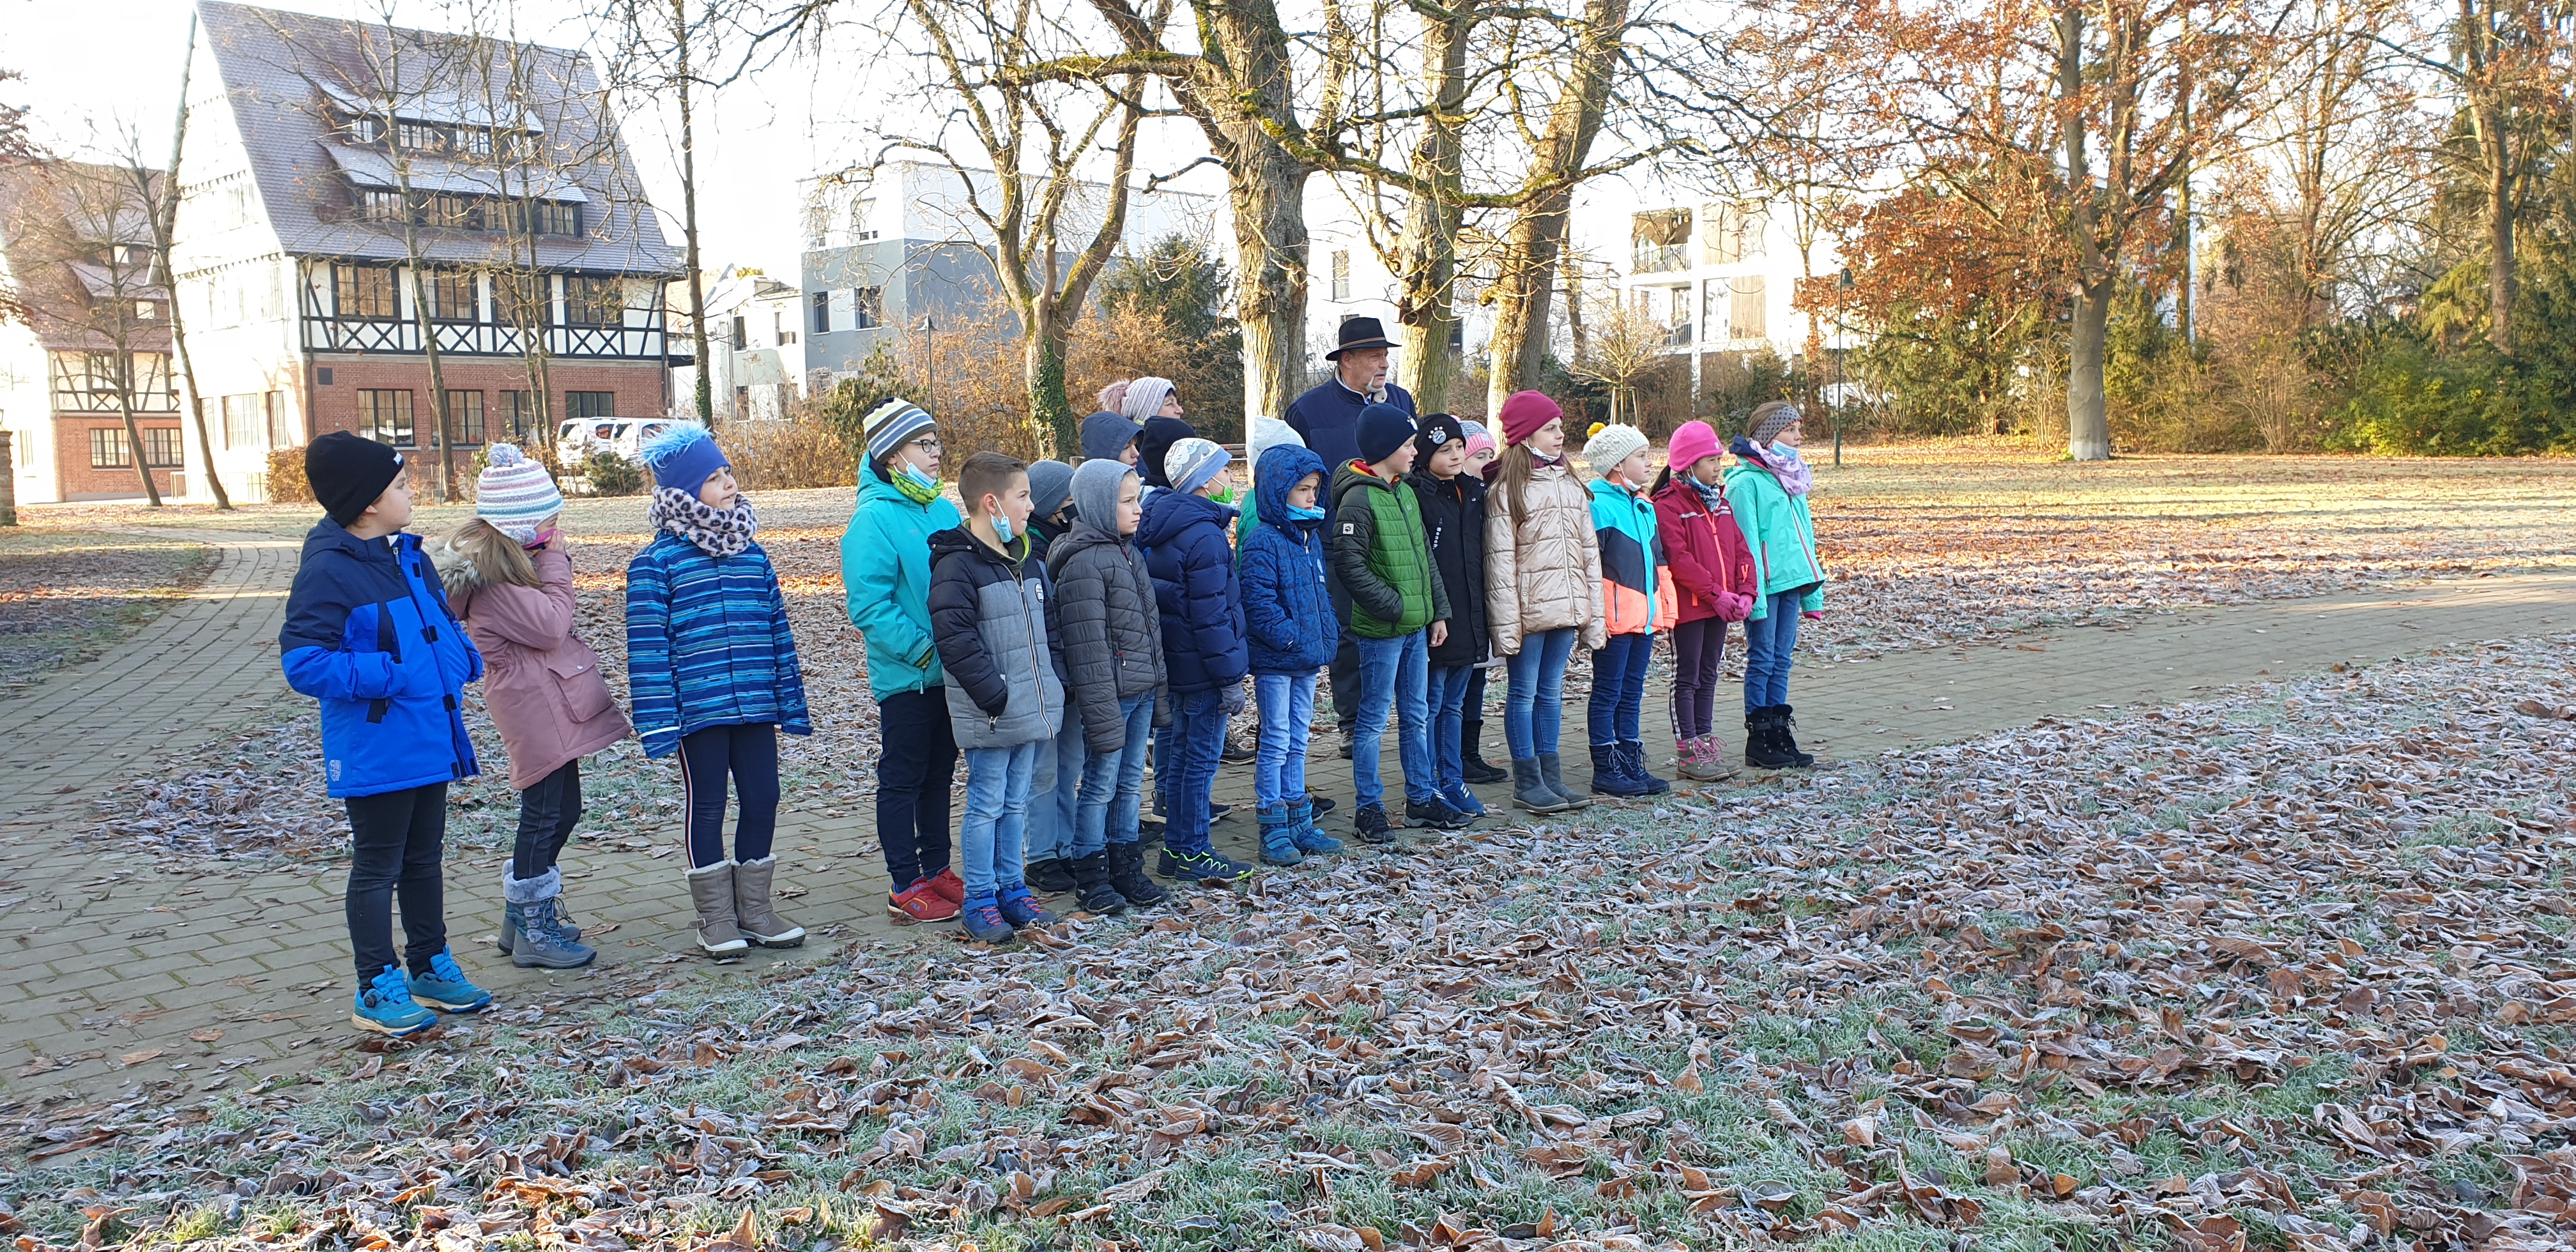  Kinder stehen im Park-Bild wird bei Klick vergrößert 